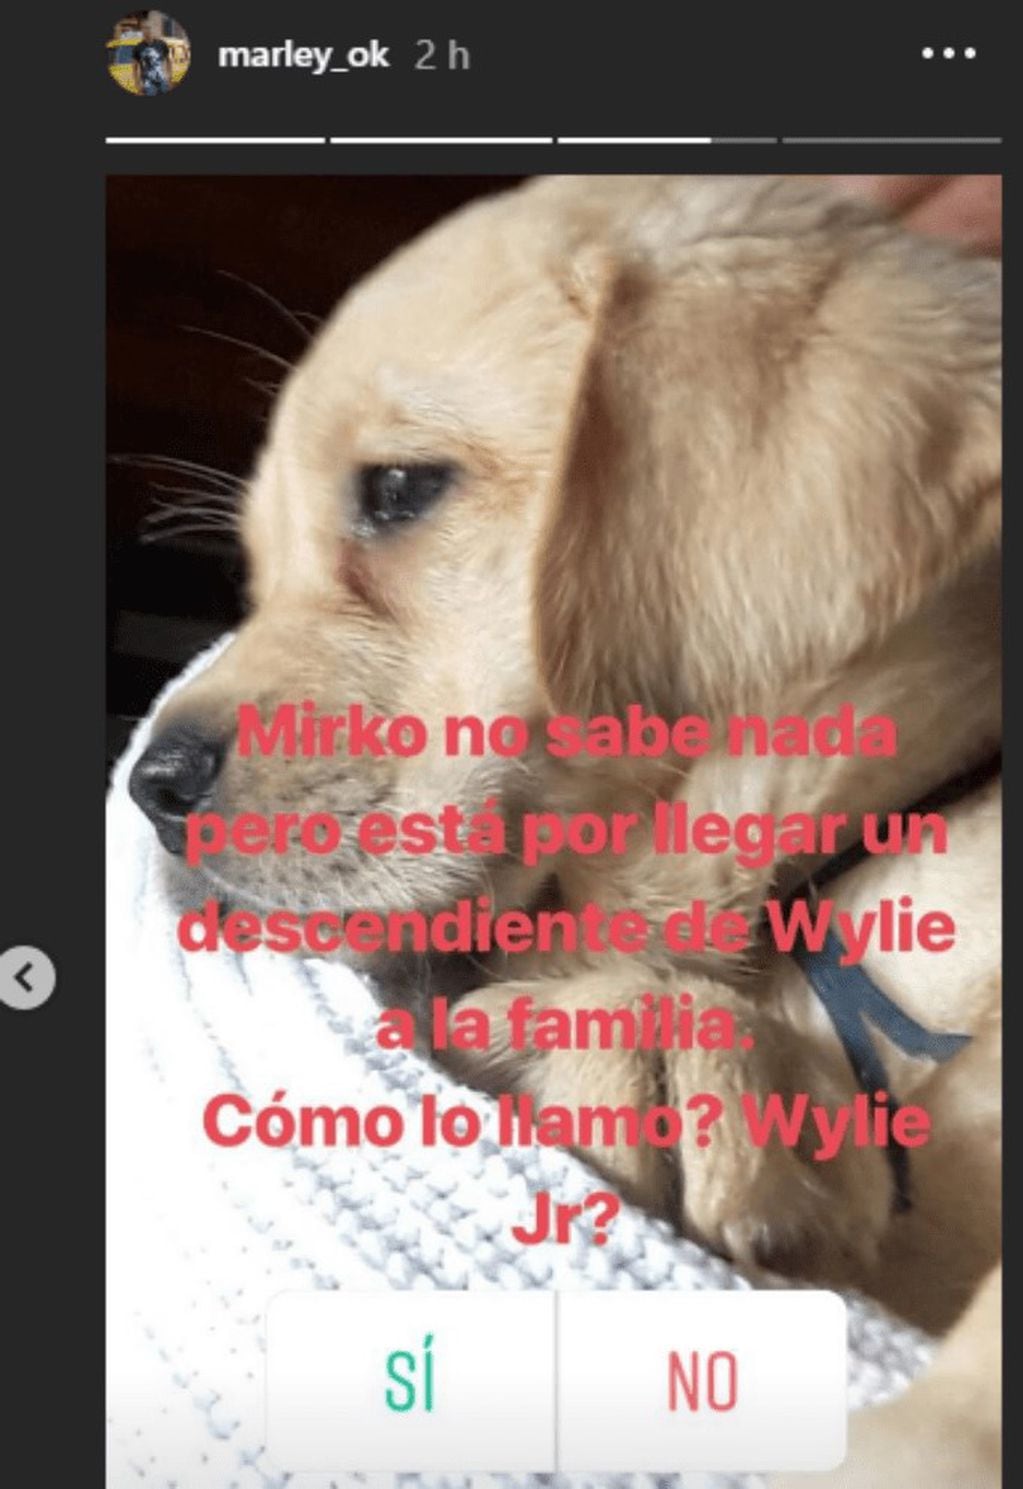 Marley publicó una encuesta en su Instagram para decidir el futuro nombre del cachorro